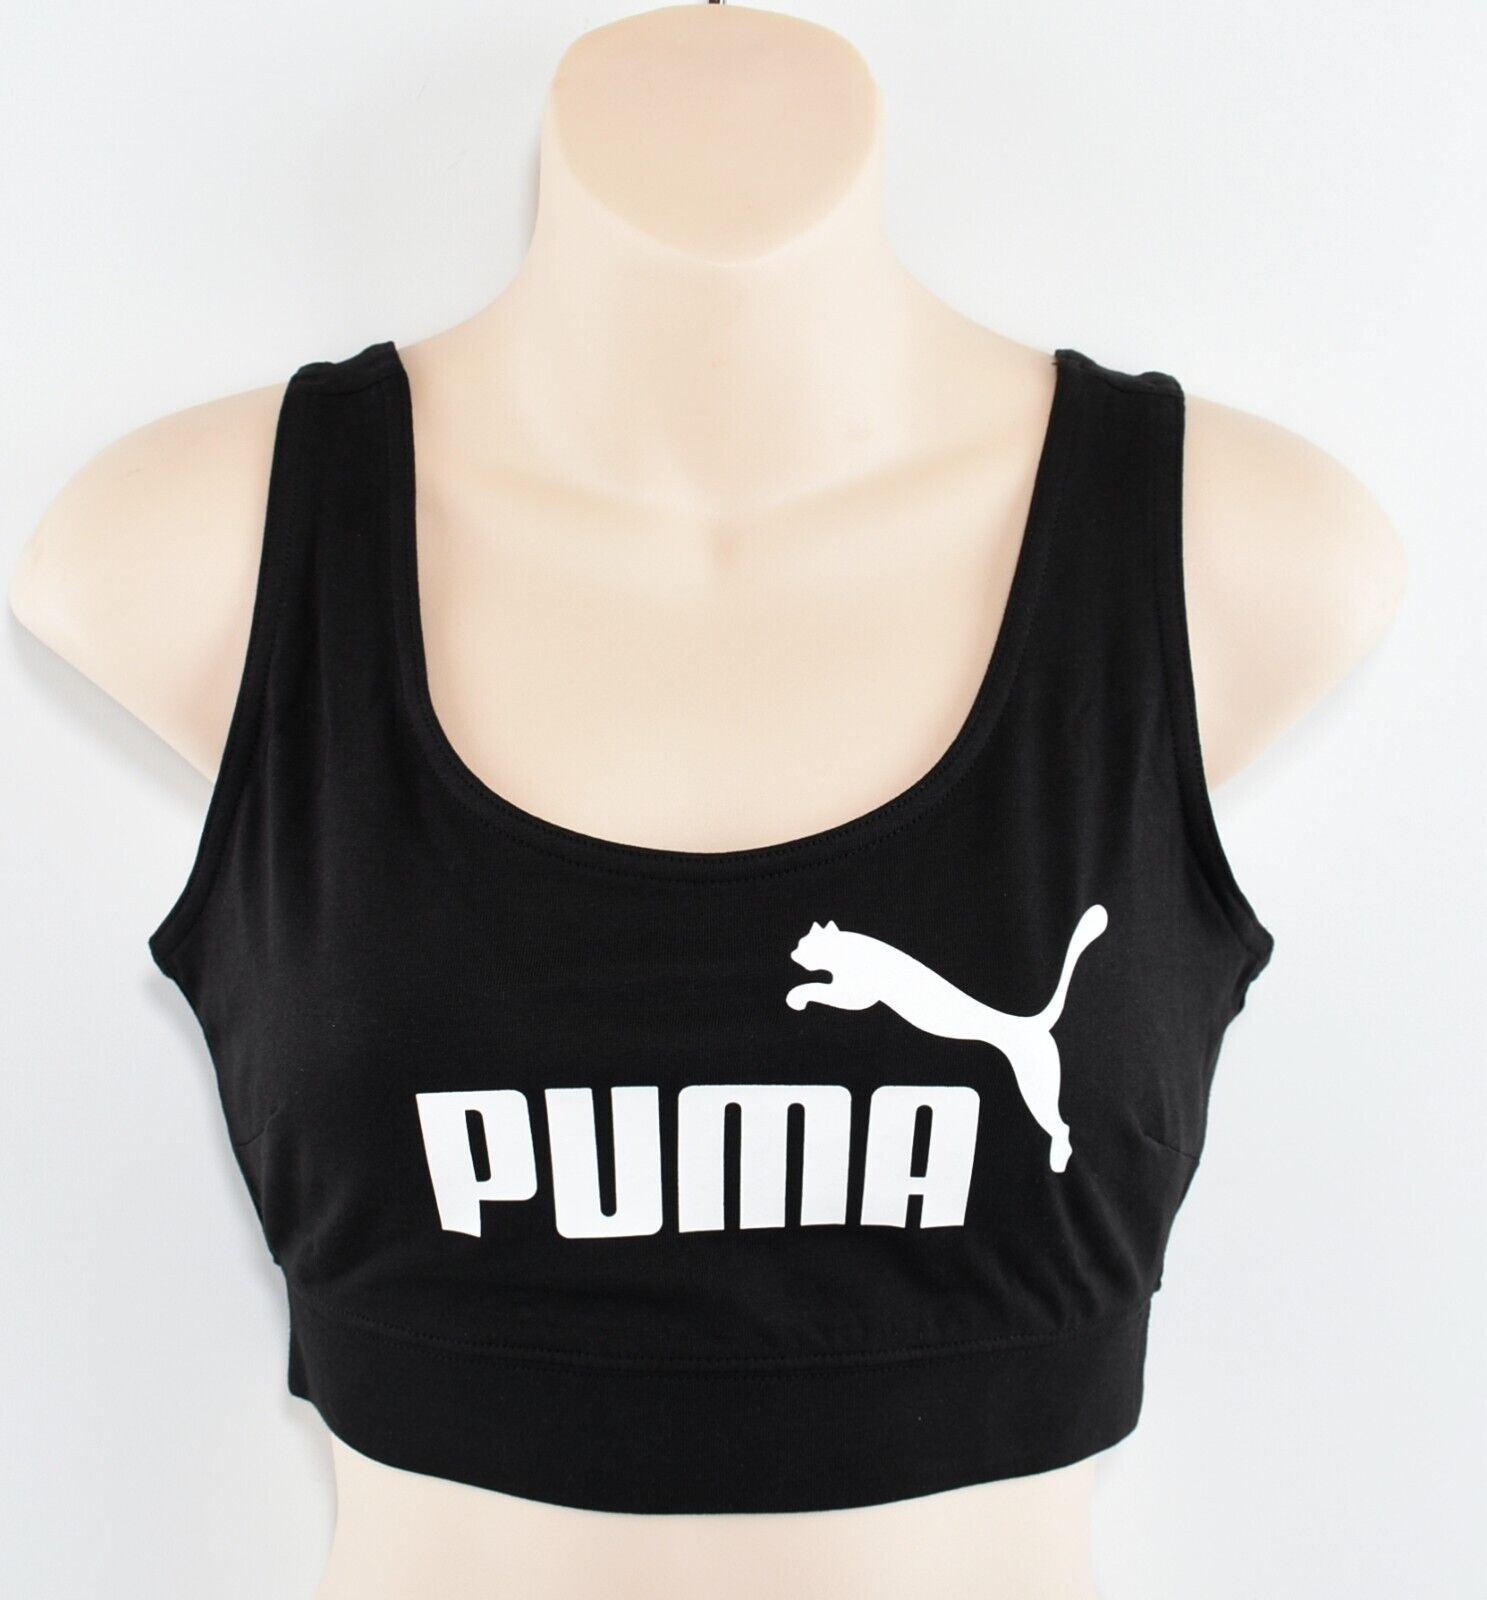 PUMA Women's Sports Bra Top, Tight Fit, Black, size L (UK 14)